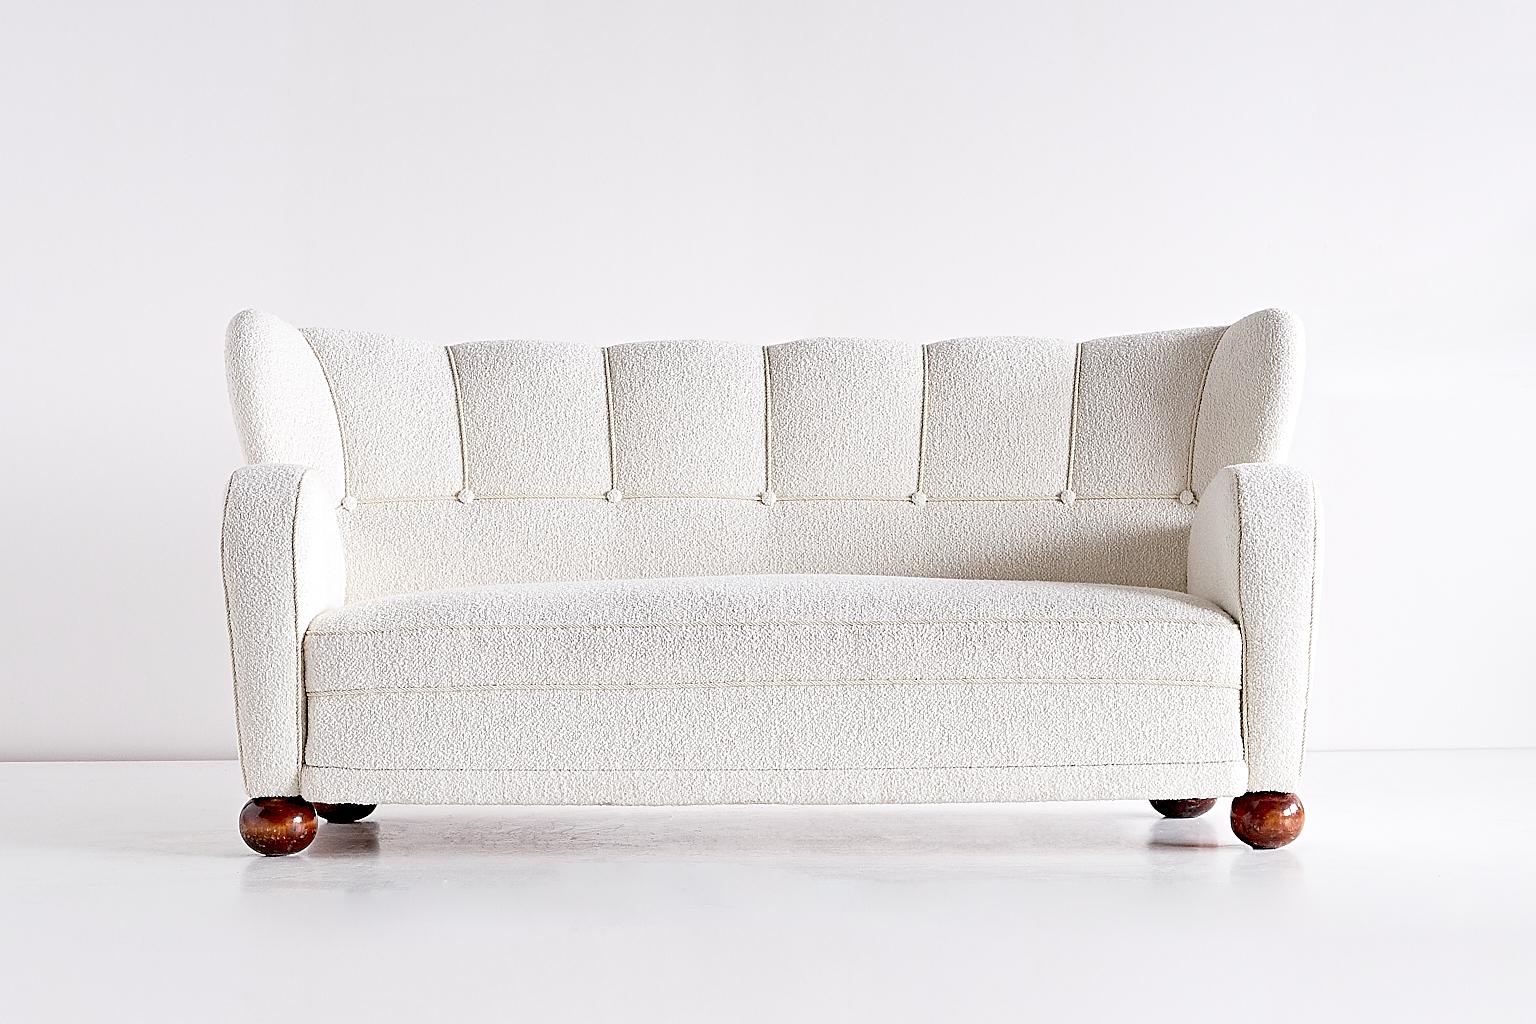 Dieses seltene Sofa wurde von Märta Blomstedt entworfen und in den 1940er Jahren in Finnland hergestellt. Das Sofa wurde komplett überholt und neu mit einem weißen Bouclé-Stoff bezogen. 
Die Architektin Märta Blomstedt, eine der treibenden Kräfte